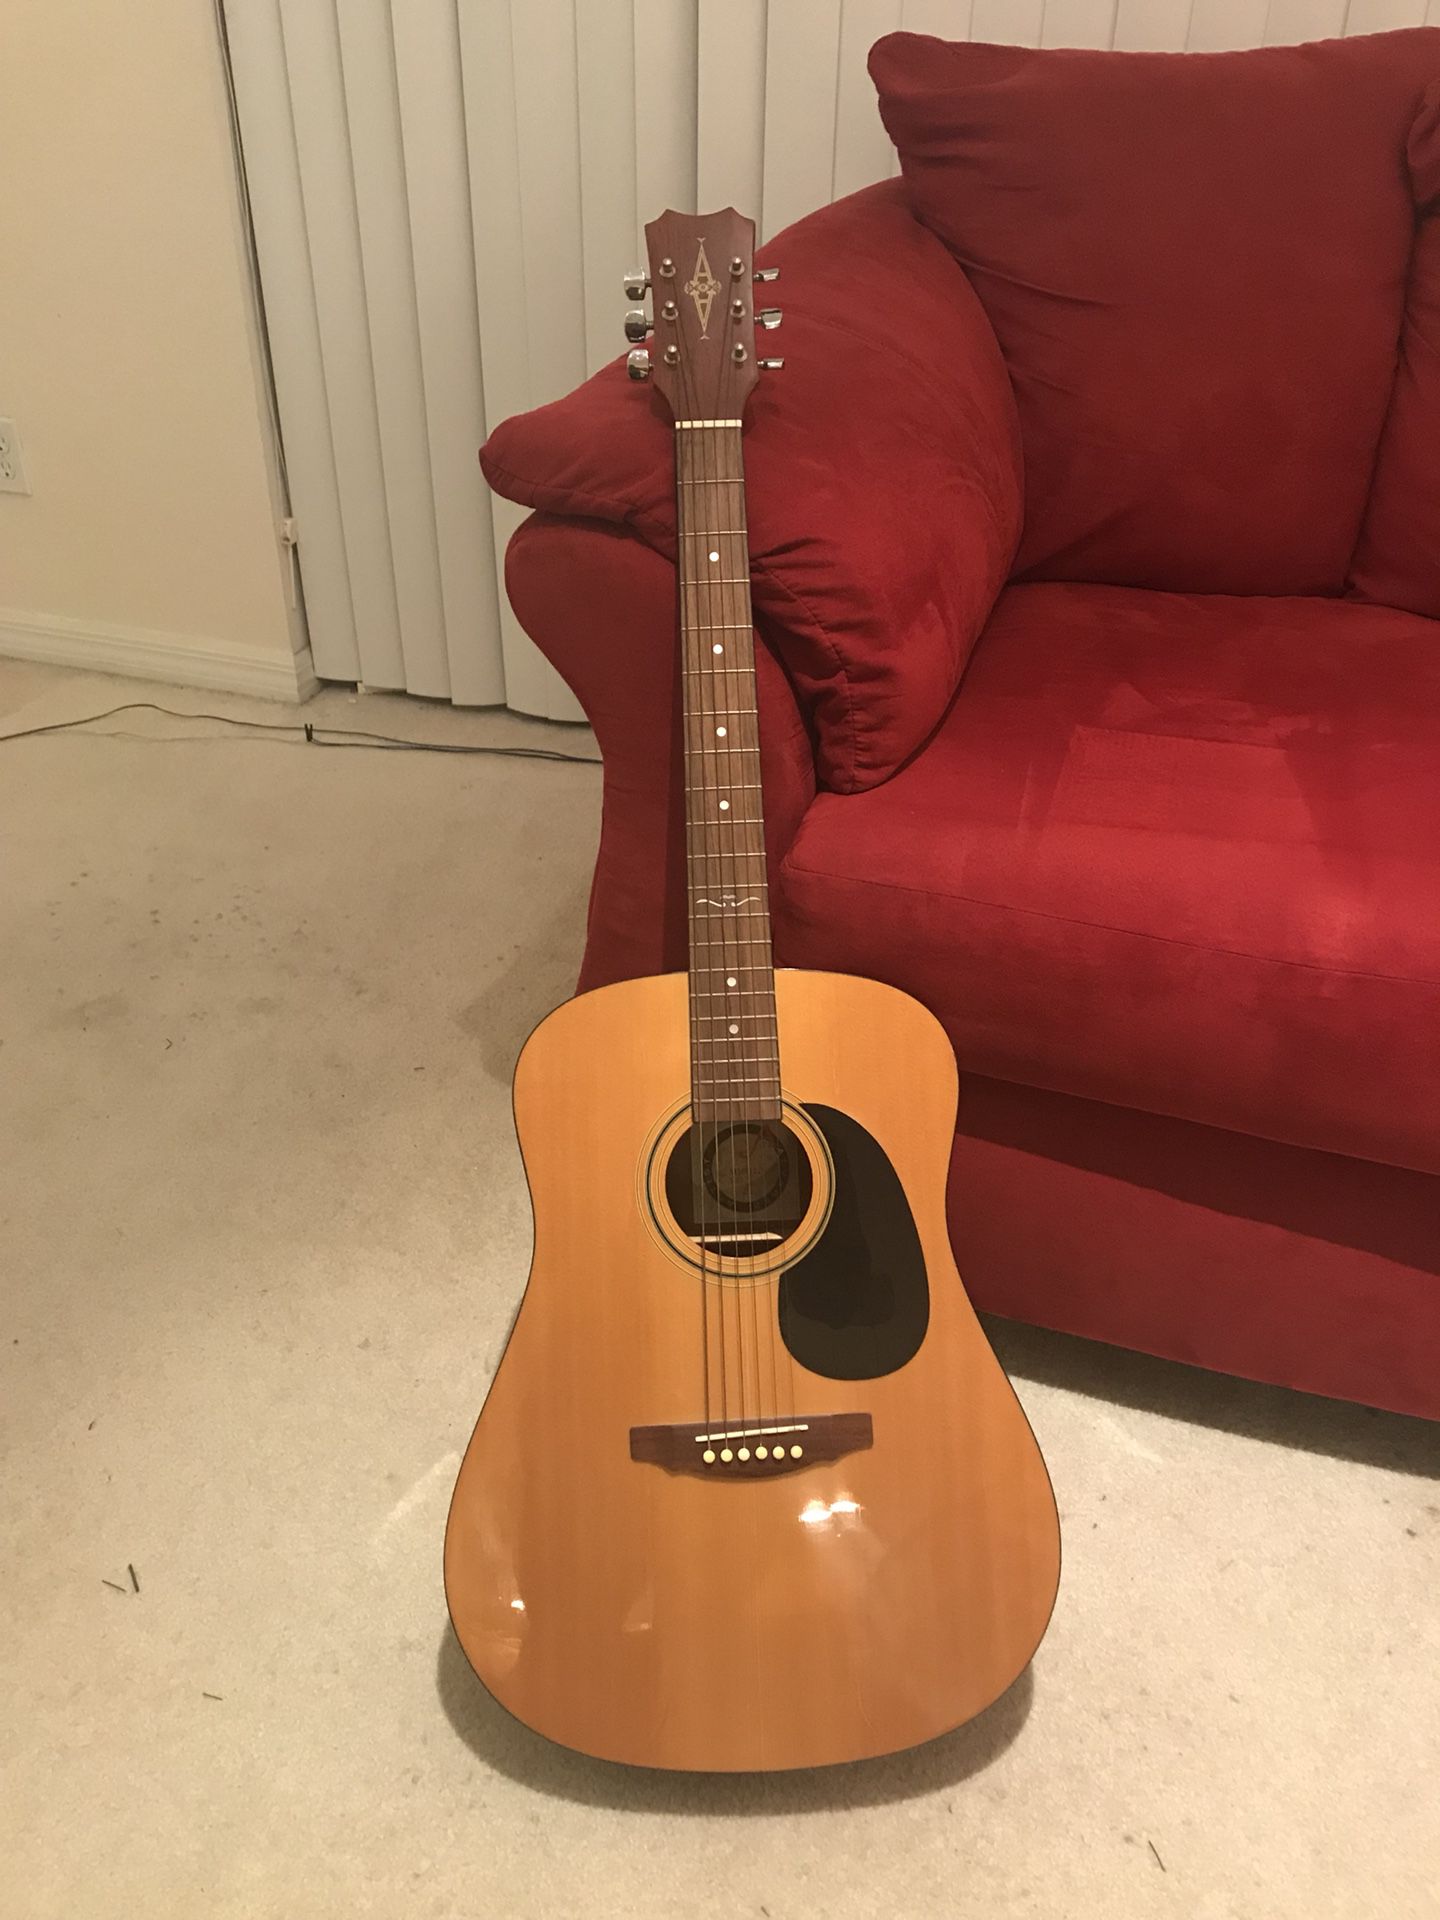 Alvarez Acoustic Guitar